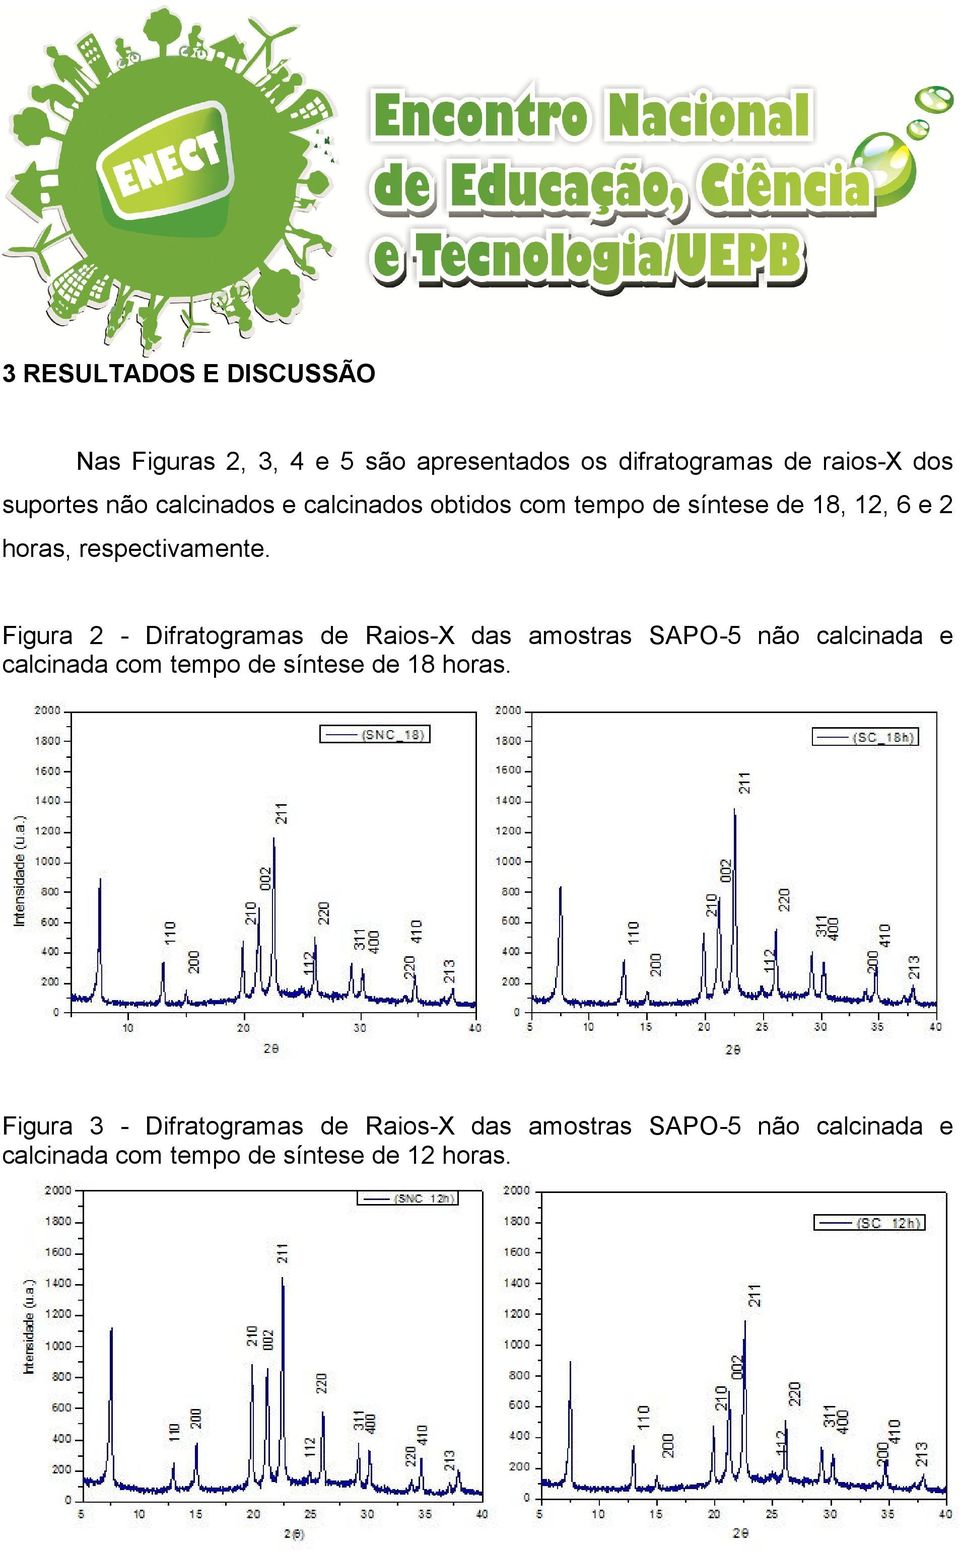 Figura 2 - Difratogramas de Raios-X das amostras SAPO-5 não calcinada e calcinada com tempo de síntese de 18